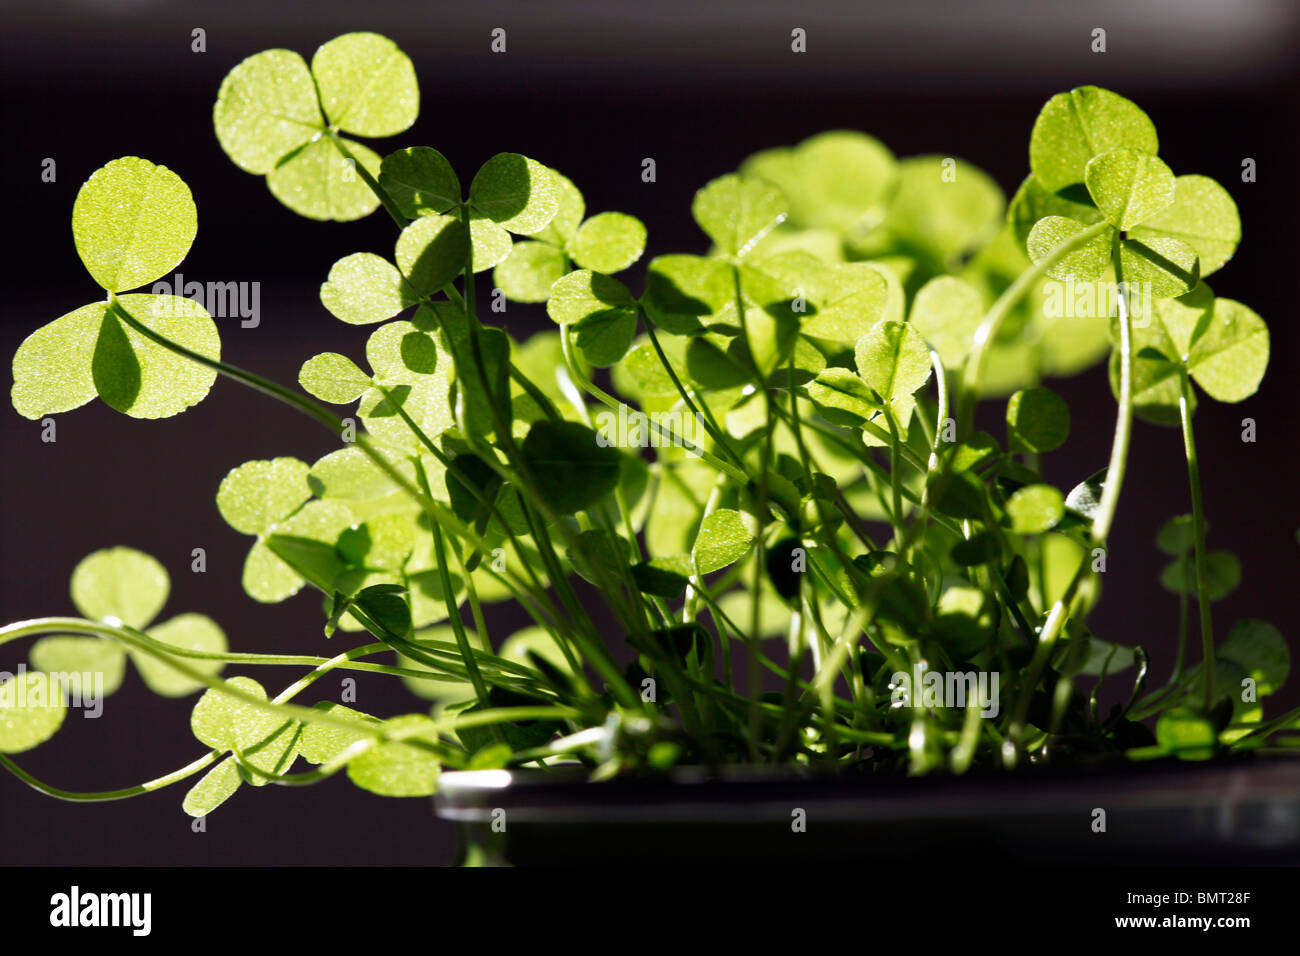 clover, plants. Stock Photo